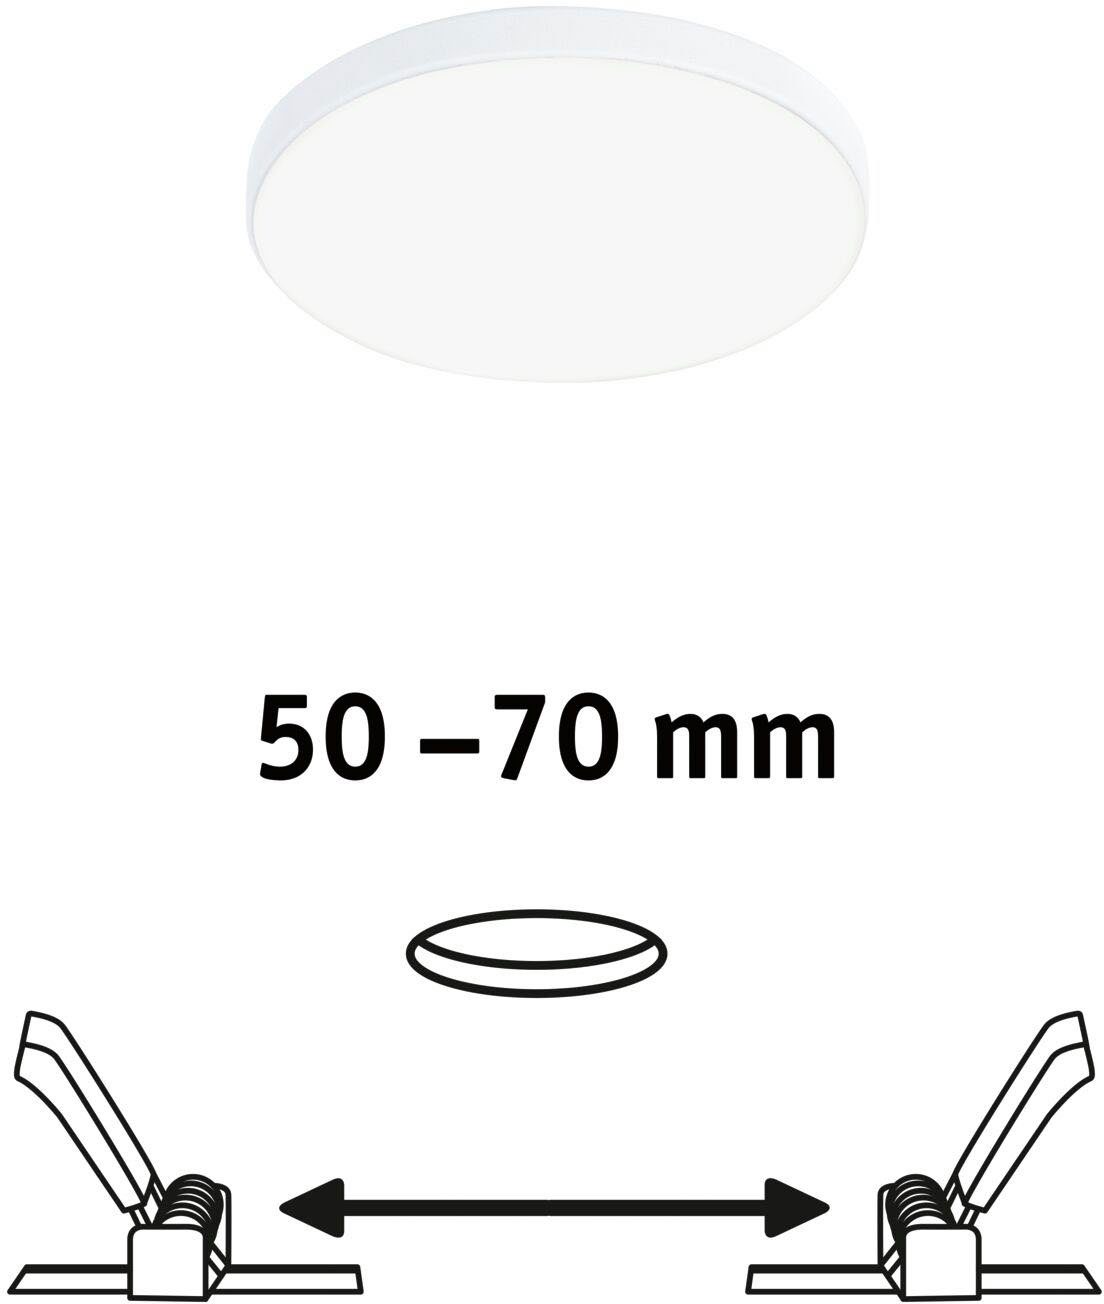 Paulmann Edge LED Neutralweiß, LED fest 90mm rund IP44 LED 500lm 90mm 4000K Edge Einbauleuchte Weiß, Einbaupanel integriert, Veluna rund Einbaupanel VariFit VariFit Veluna 4000K IP44 500lm Weiß LED